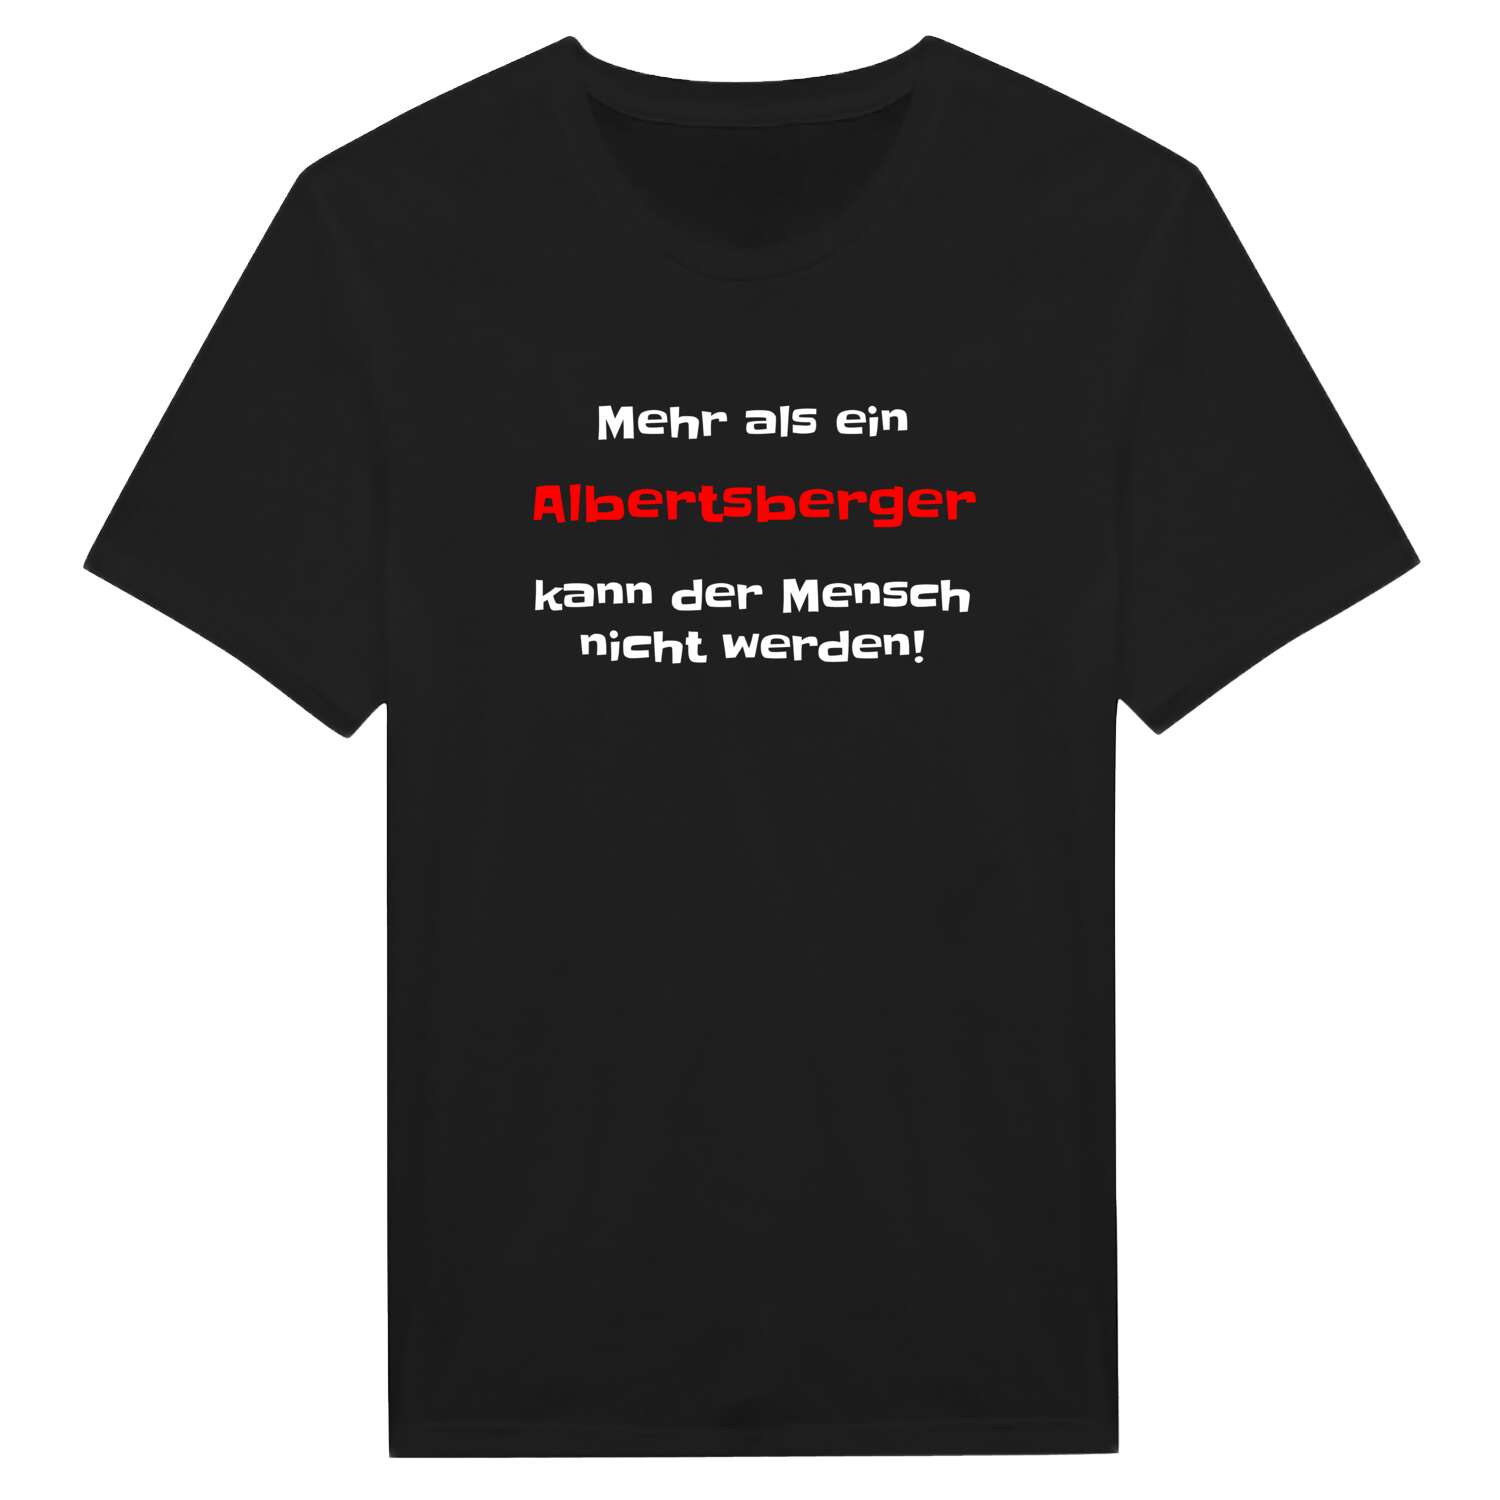 Albertsberg T-Shirt »Mehr als ein«